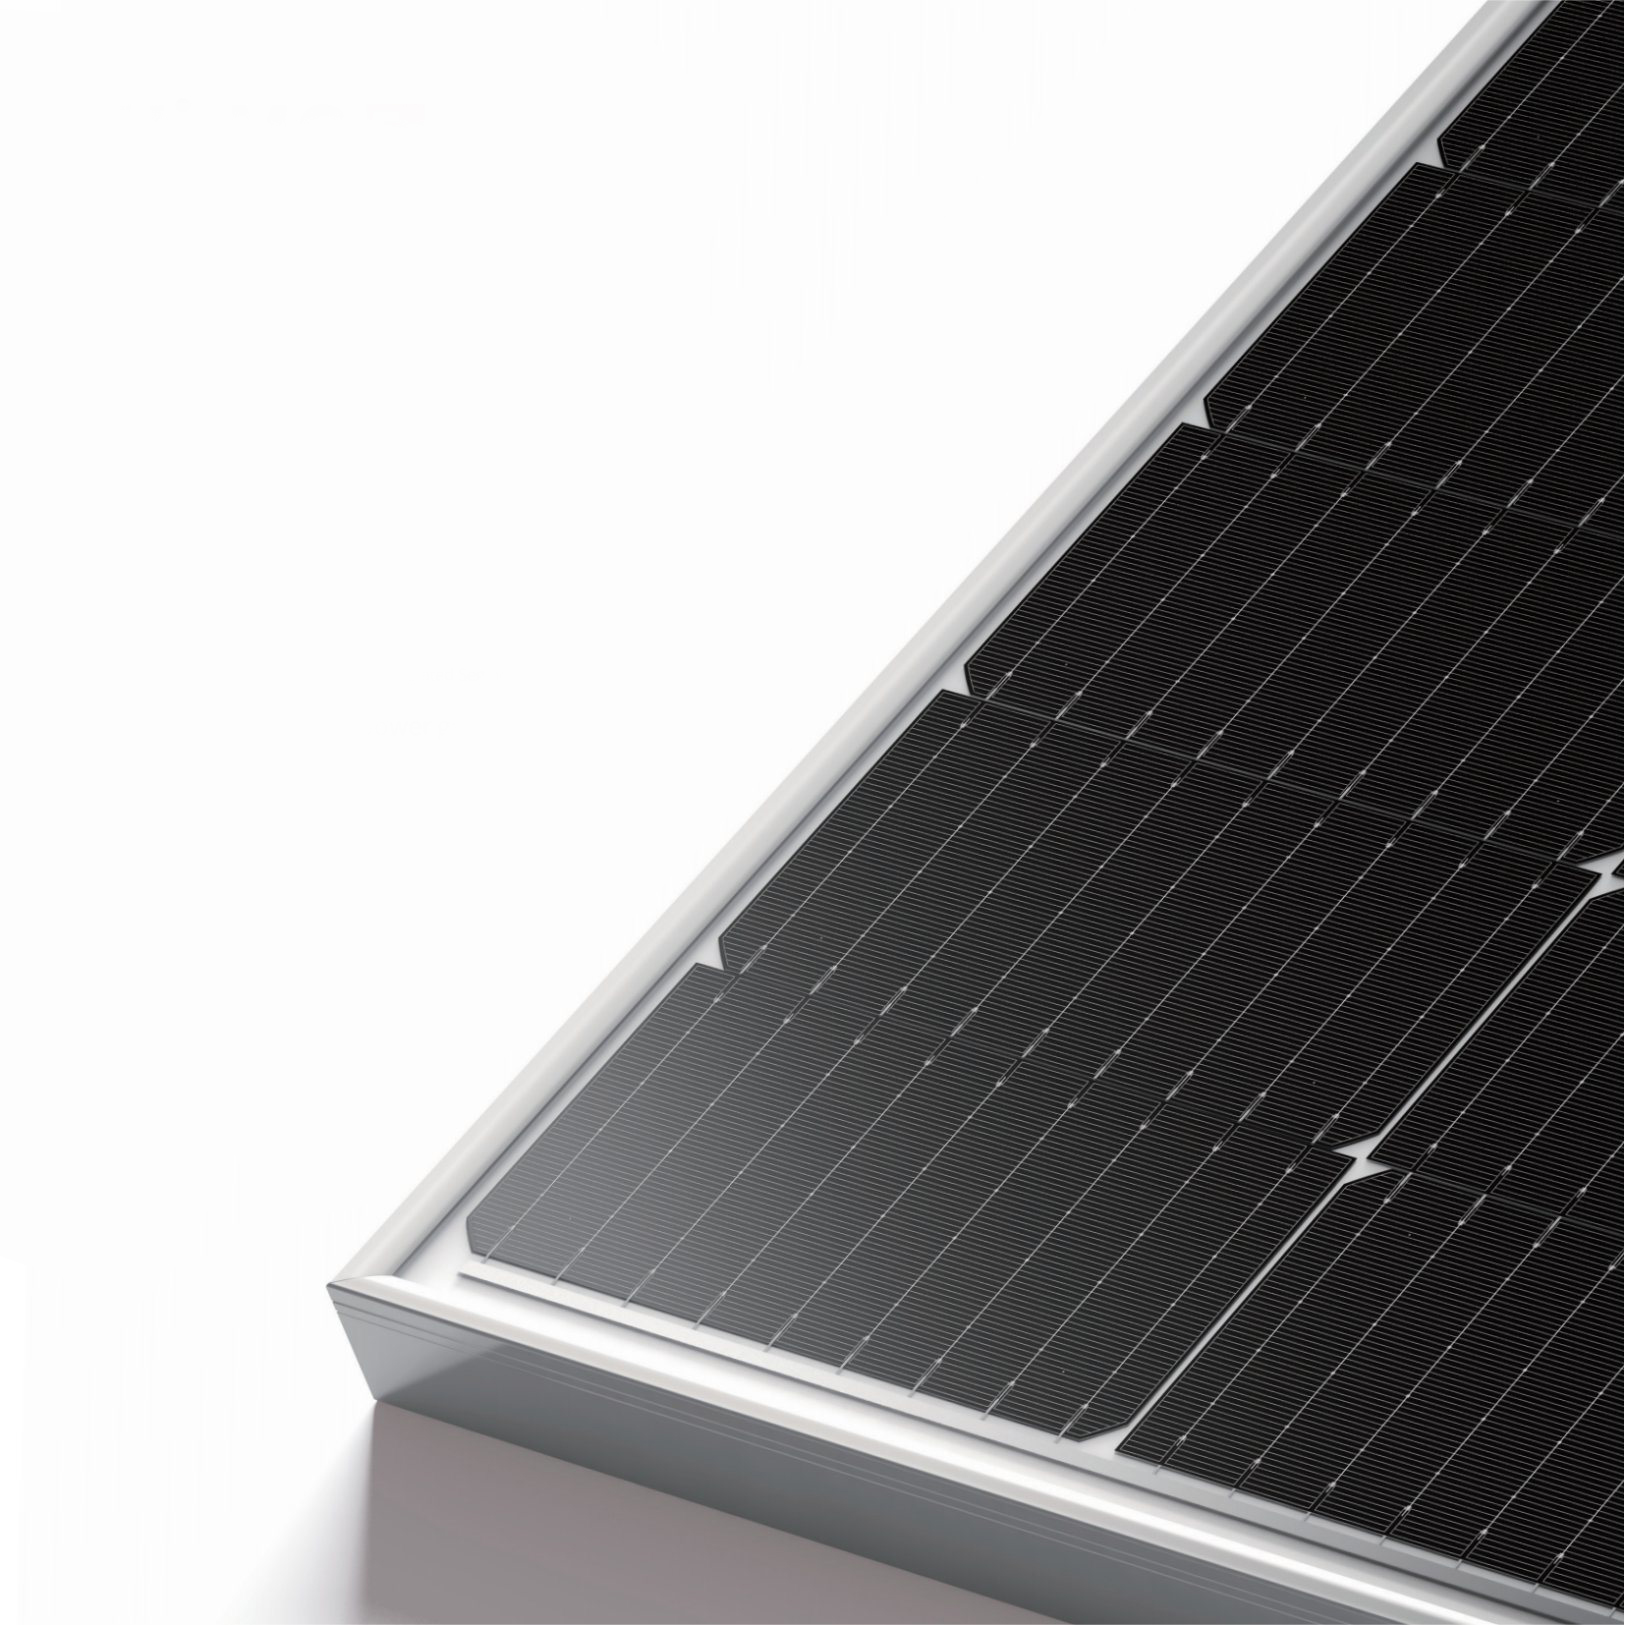 LEICKE 108 hocheffiziente Solarzellen，415W Solarpanel monokristalline Wirkungsgrad，neuartigen TOPCon Zellen，Hoher